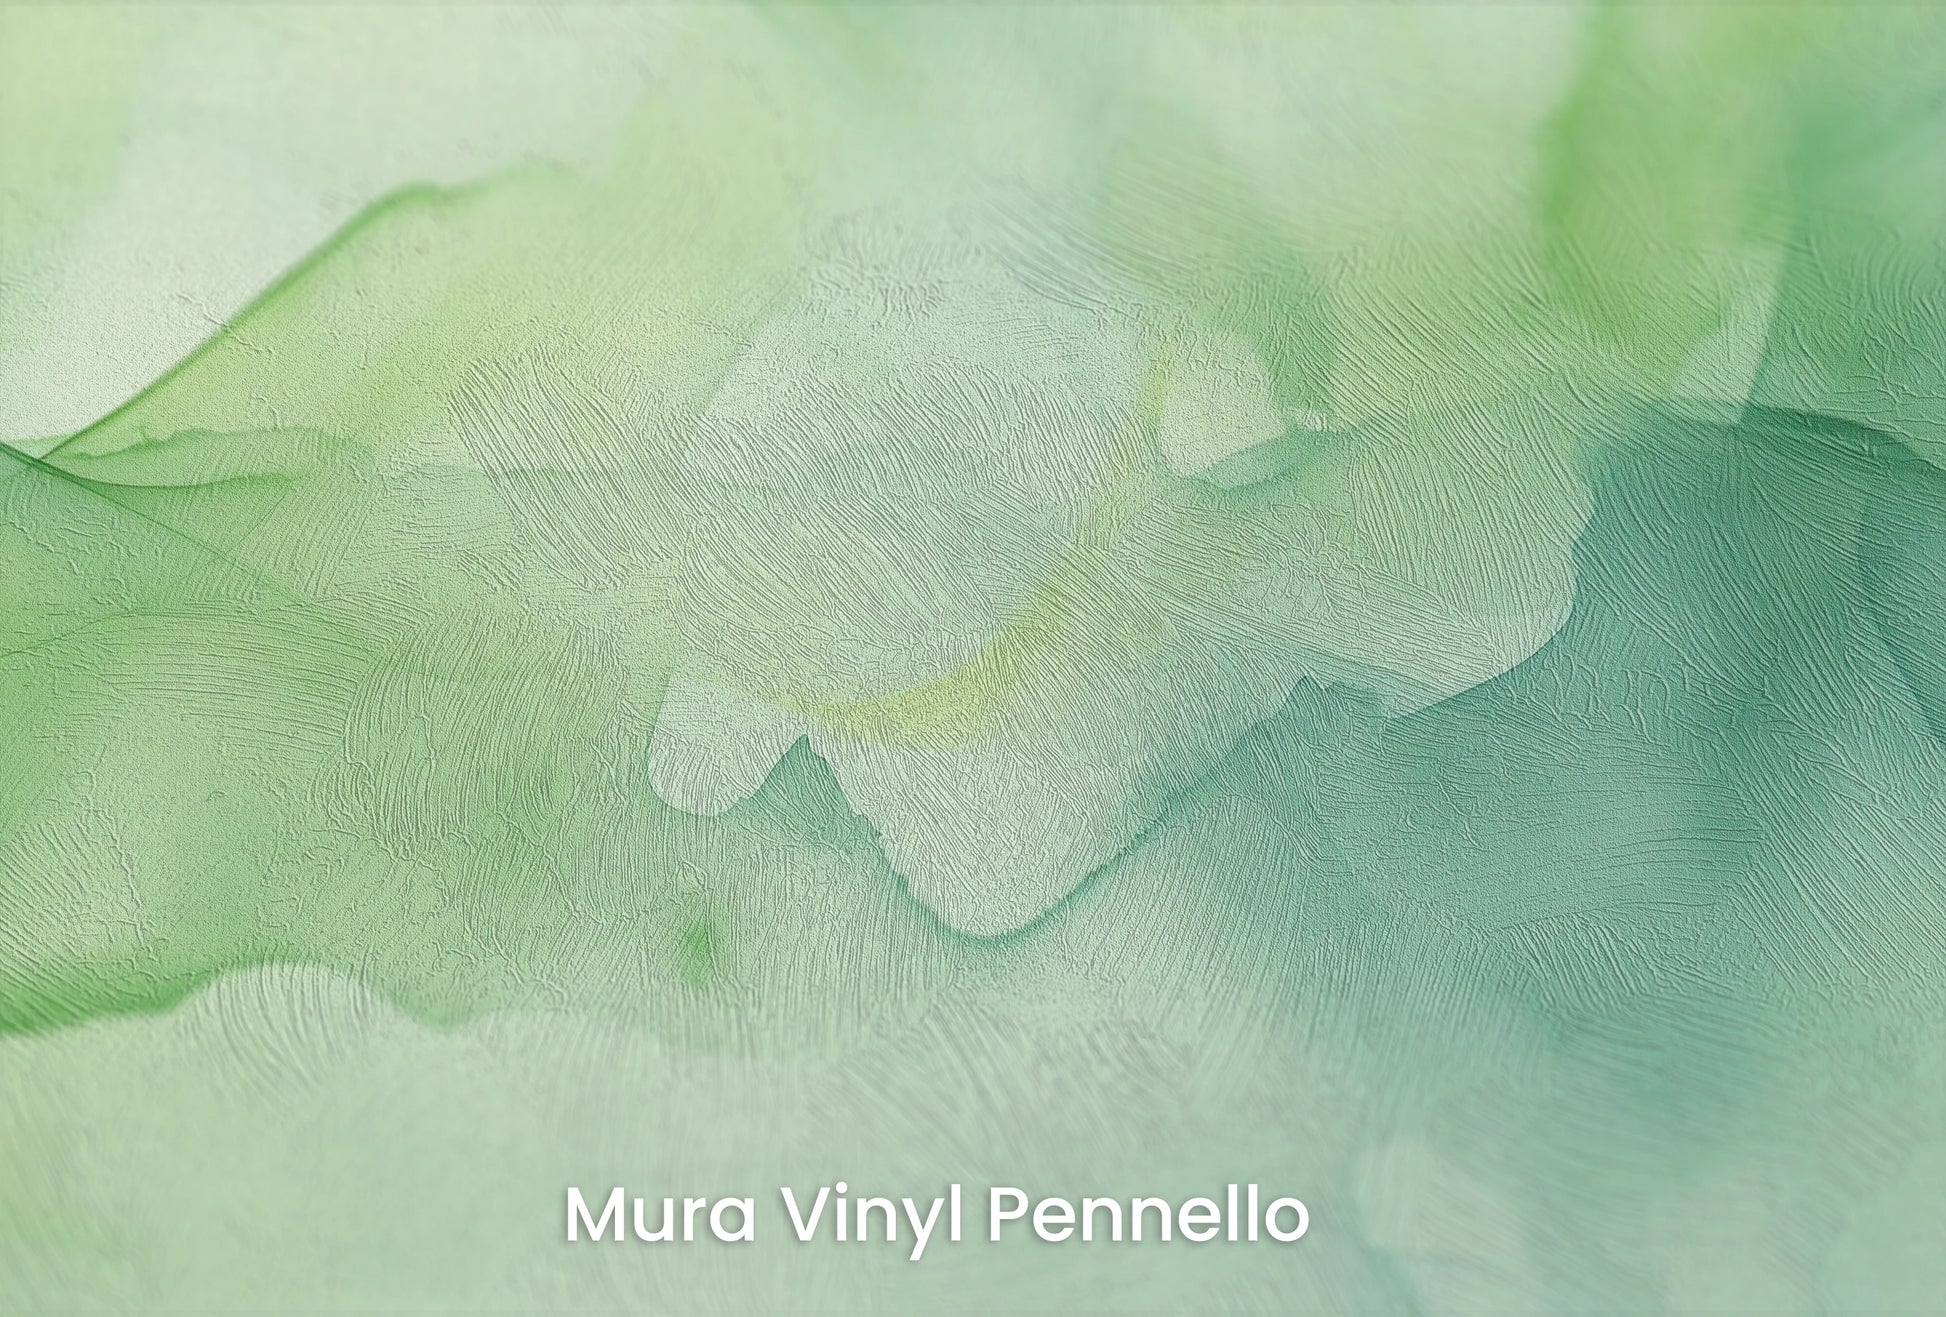 Zbliżenie na artystyczną fototapetę o nazwie Aquatic Whisper na podłożu Mura Vinyl Pennello - faktura pociągnięć pędzla malarskiego.